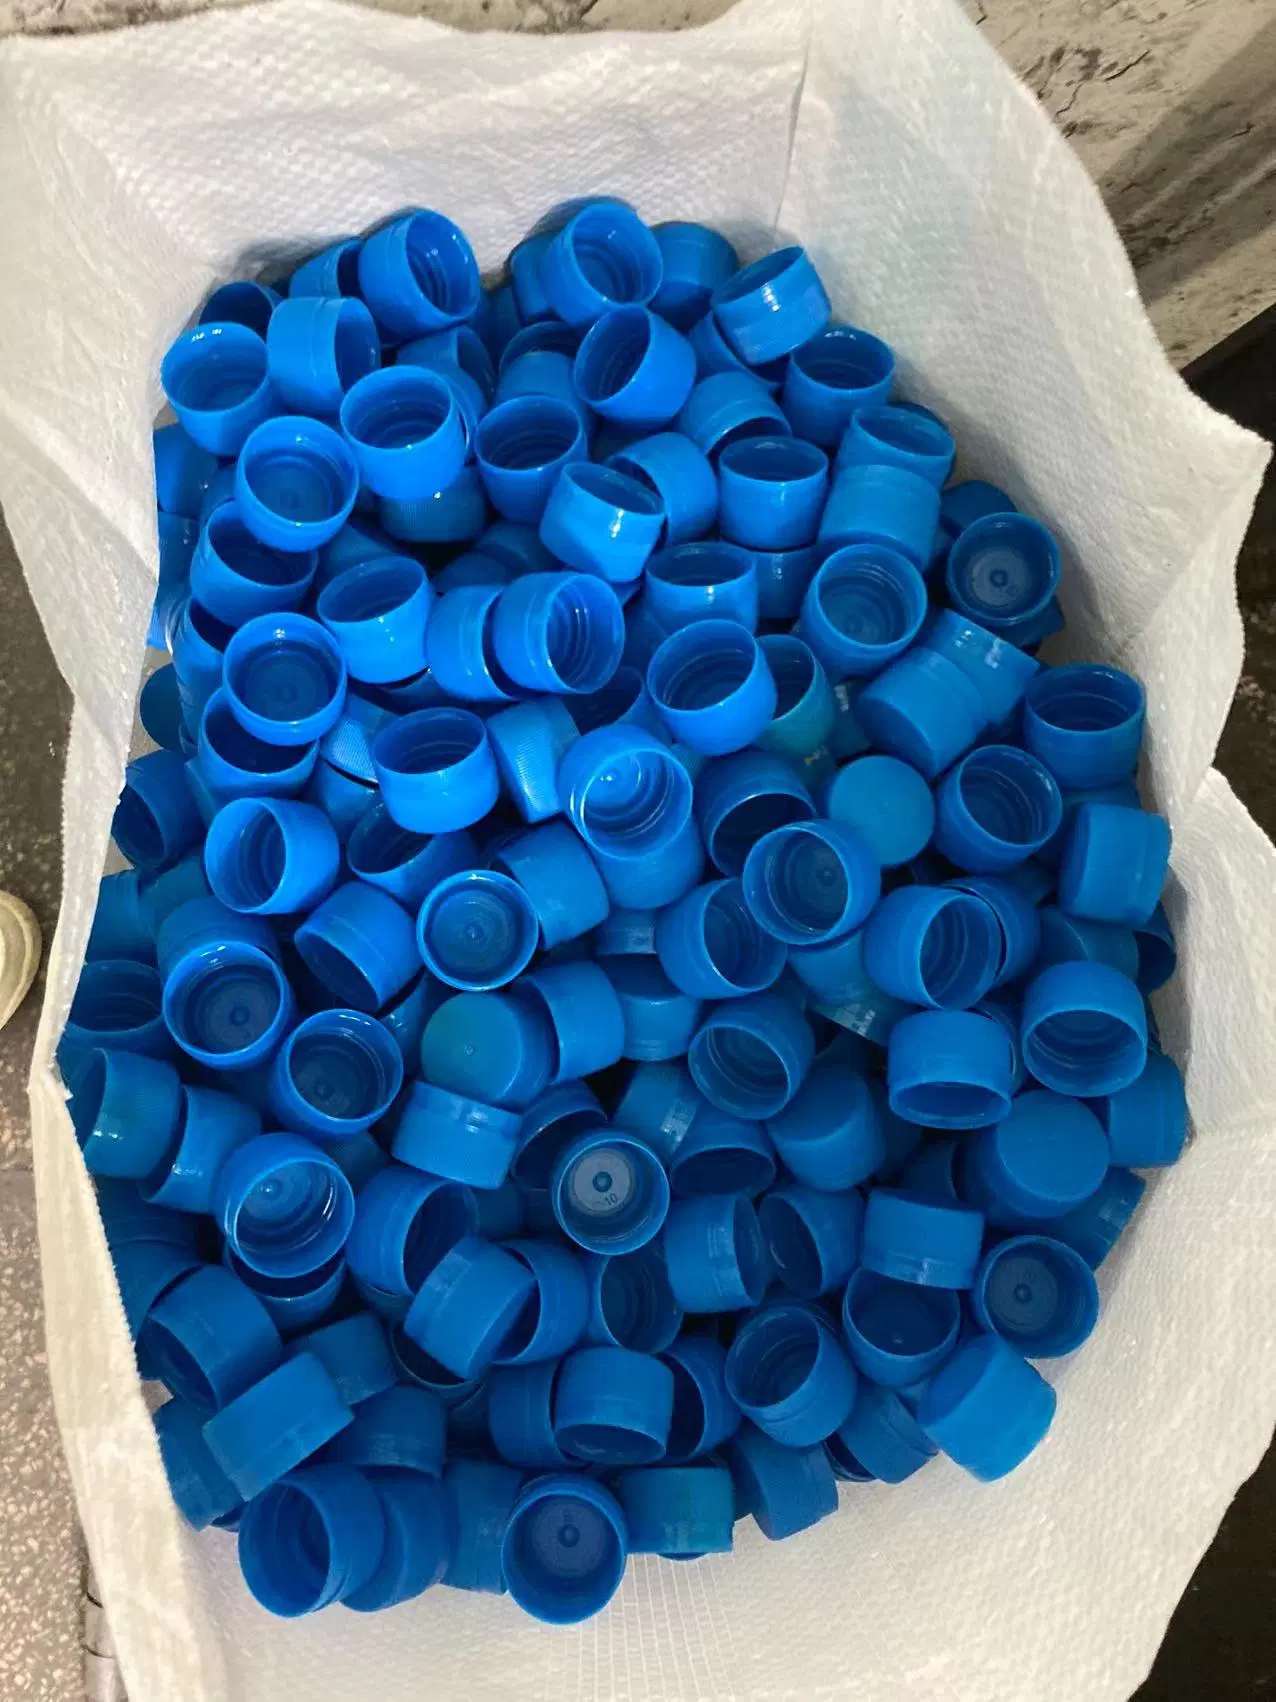 China pas cher le plafonnement de la machine de moulage par injection plastique moule bouteille